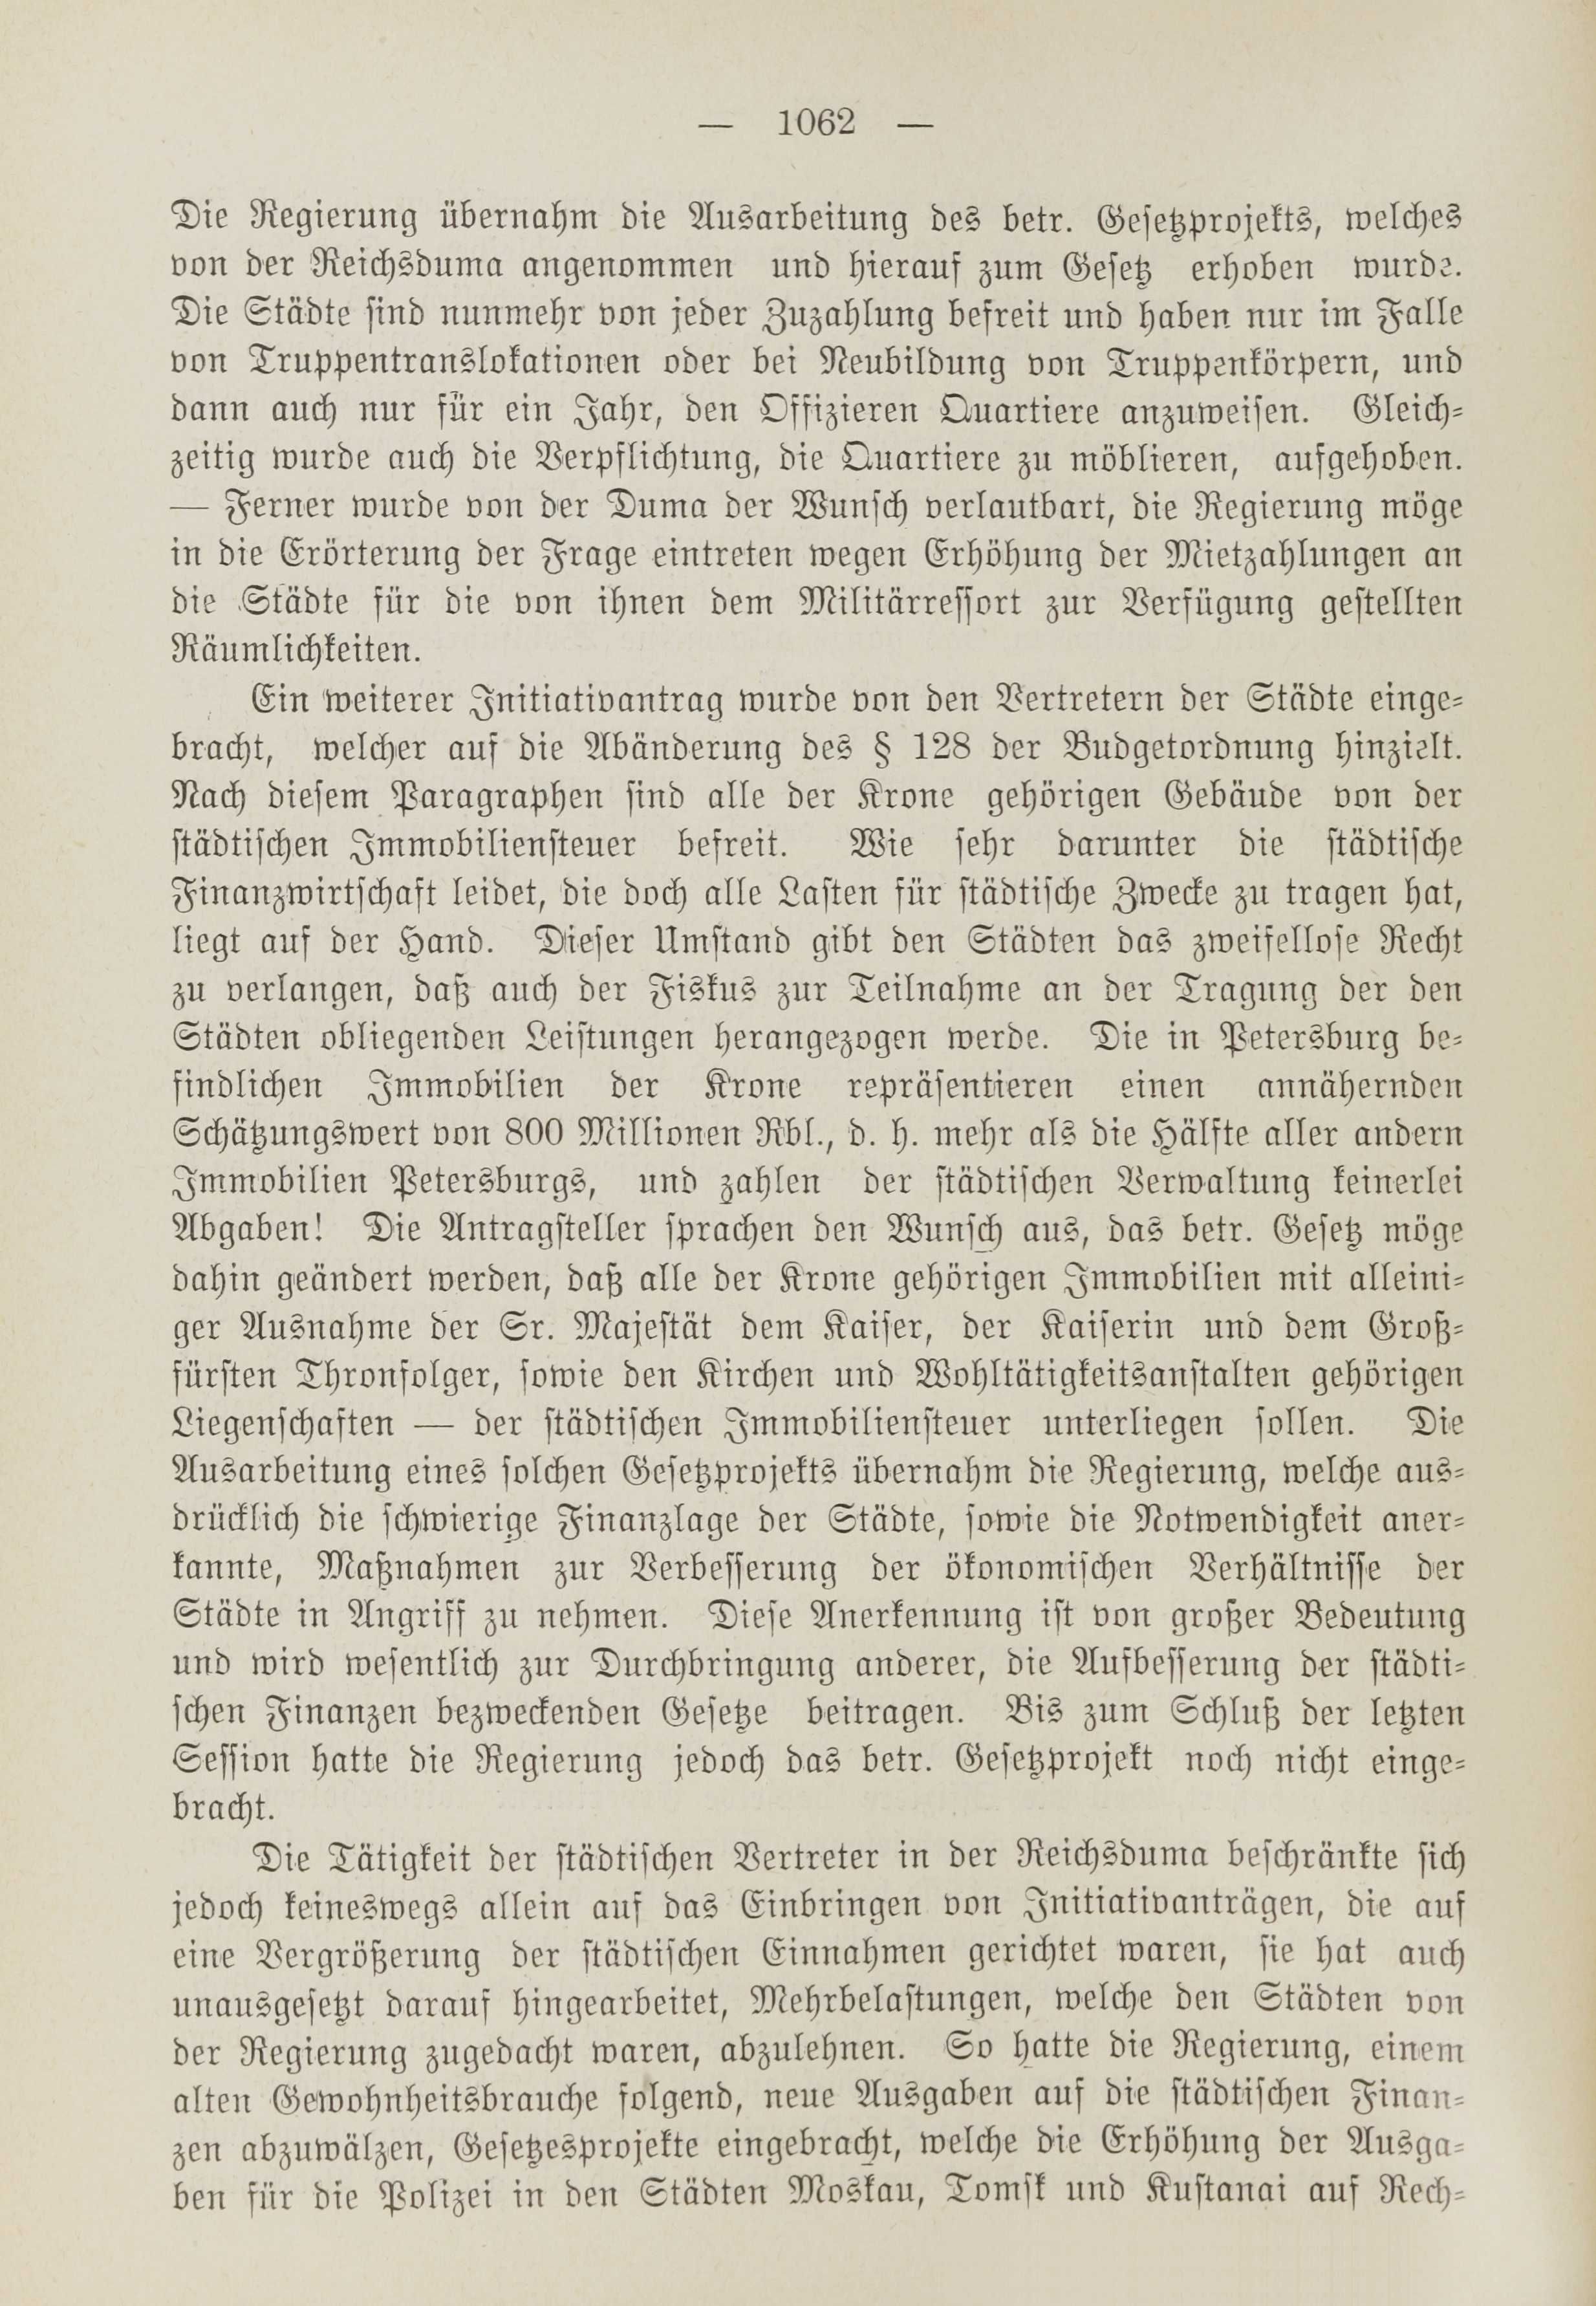 Deutsche Monatsschrift für Russland [1] (1912) | 1070. (1062) Main body of text